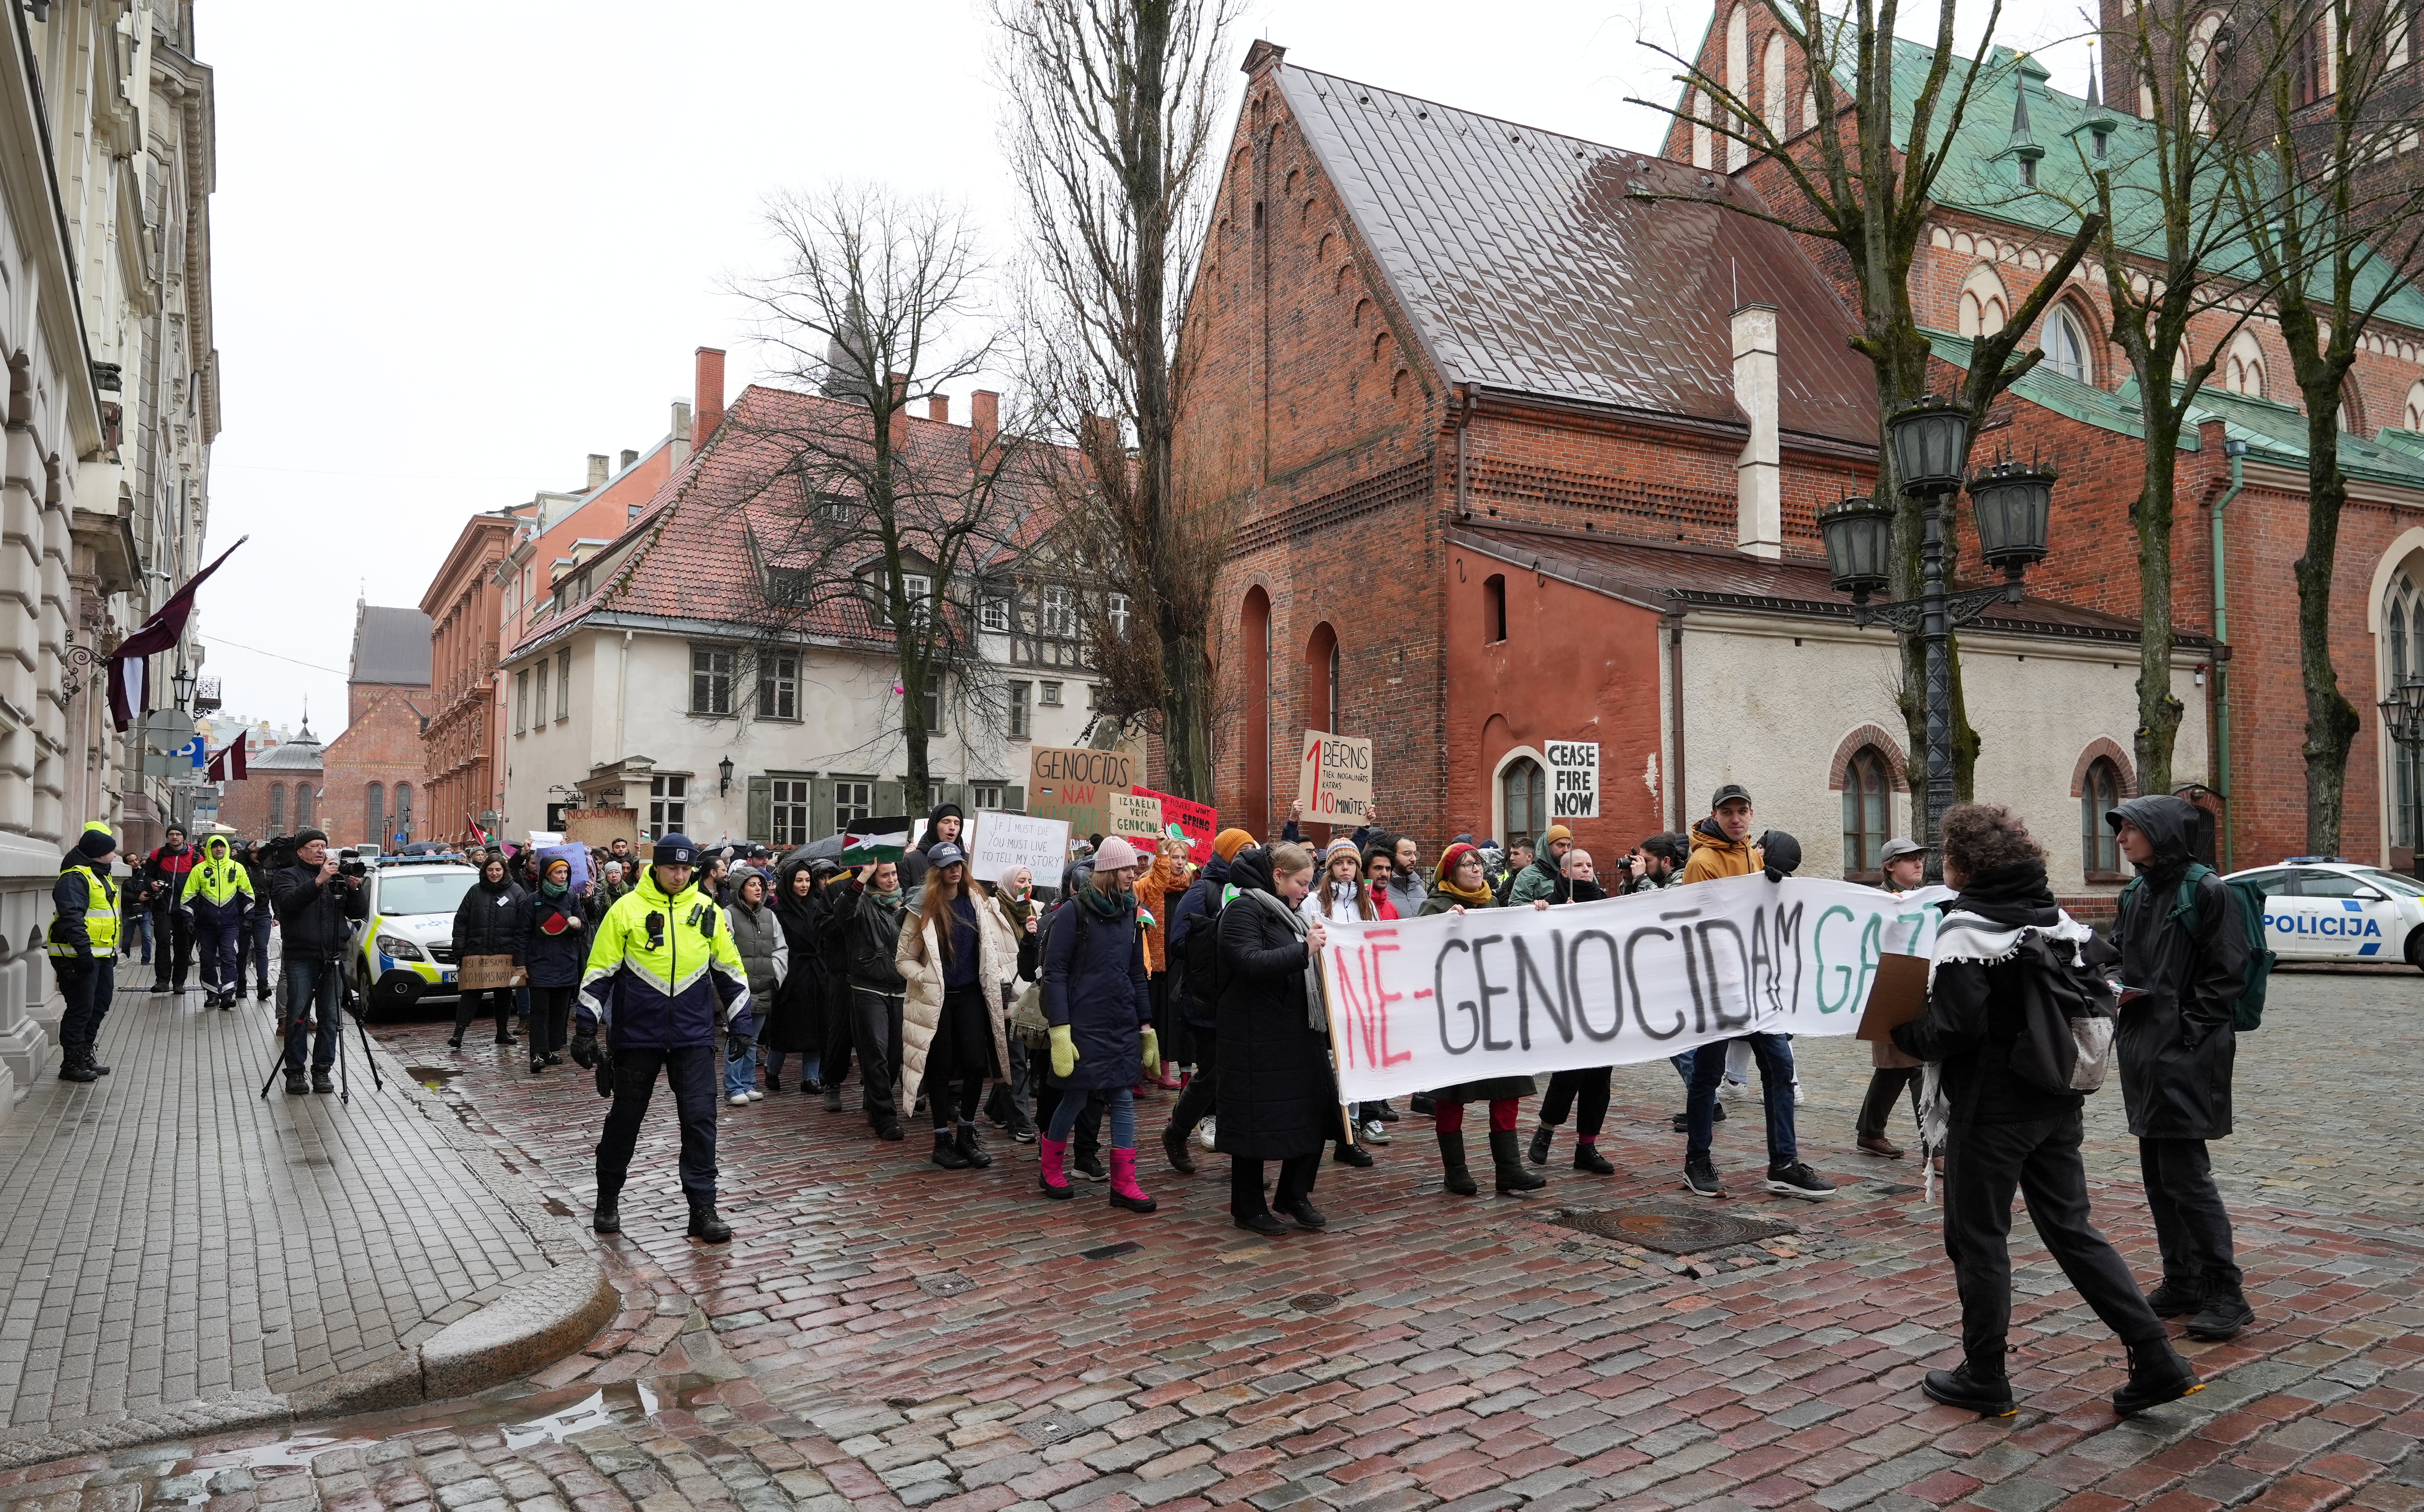 Rīgā aktīvistu grupa dodas gājienā, lai paustu atbalstu Palestīnai.